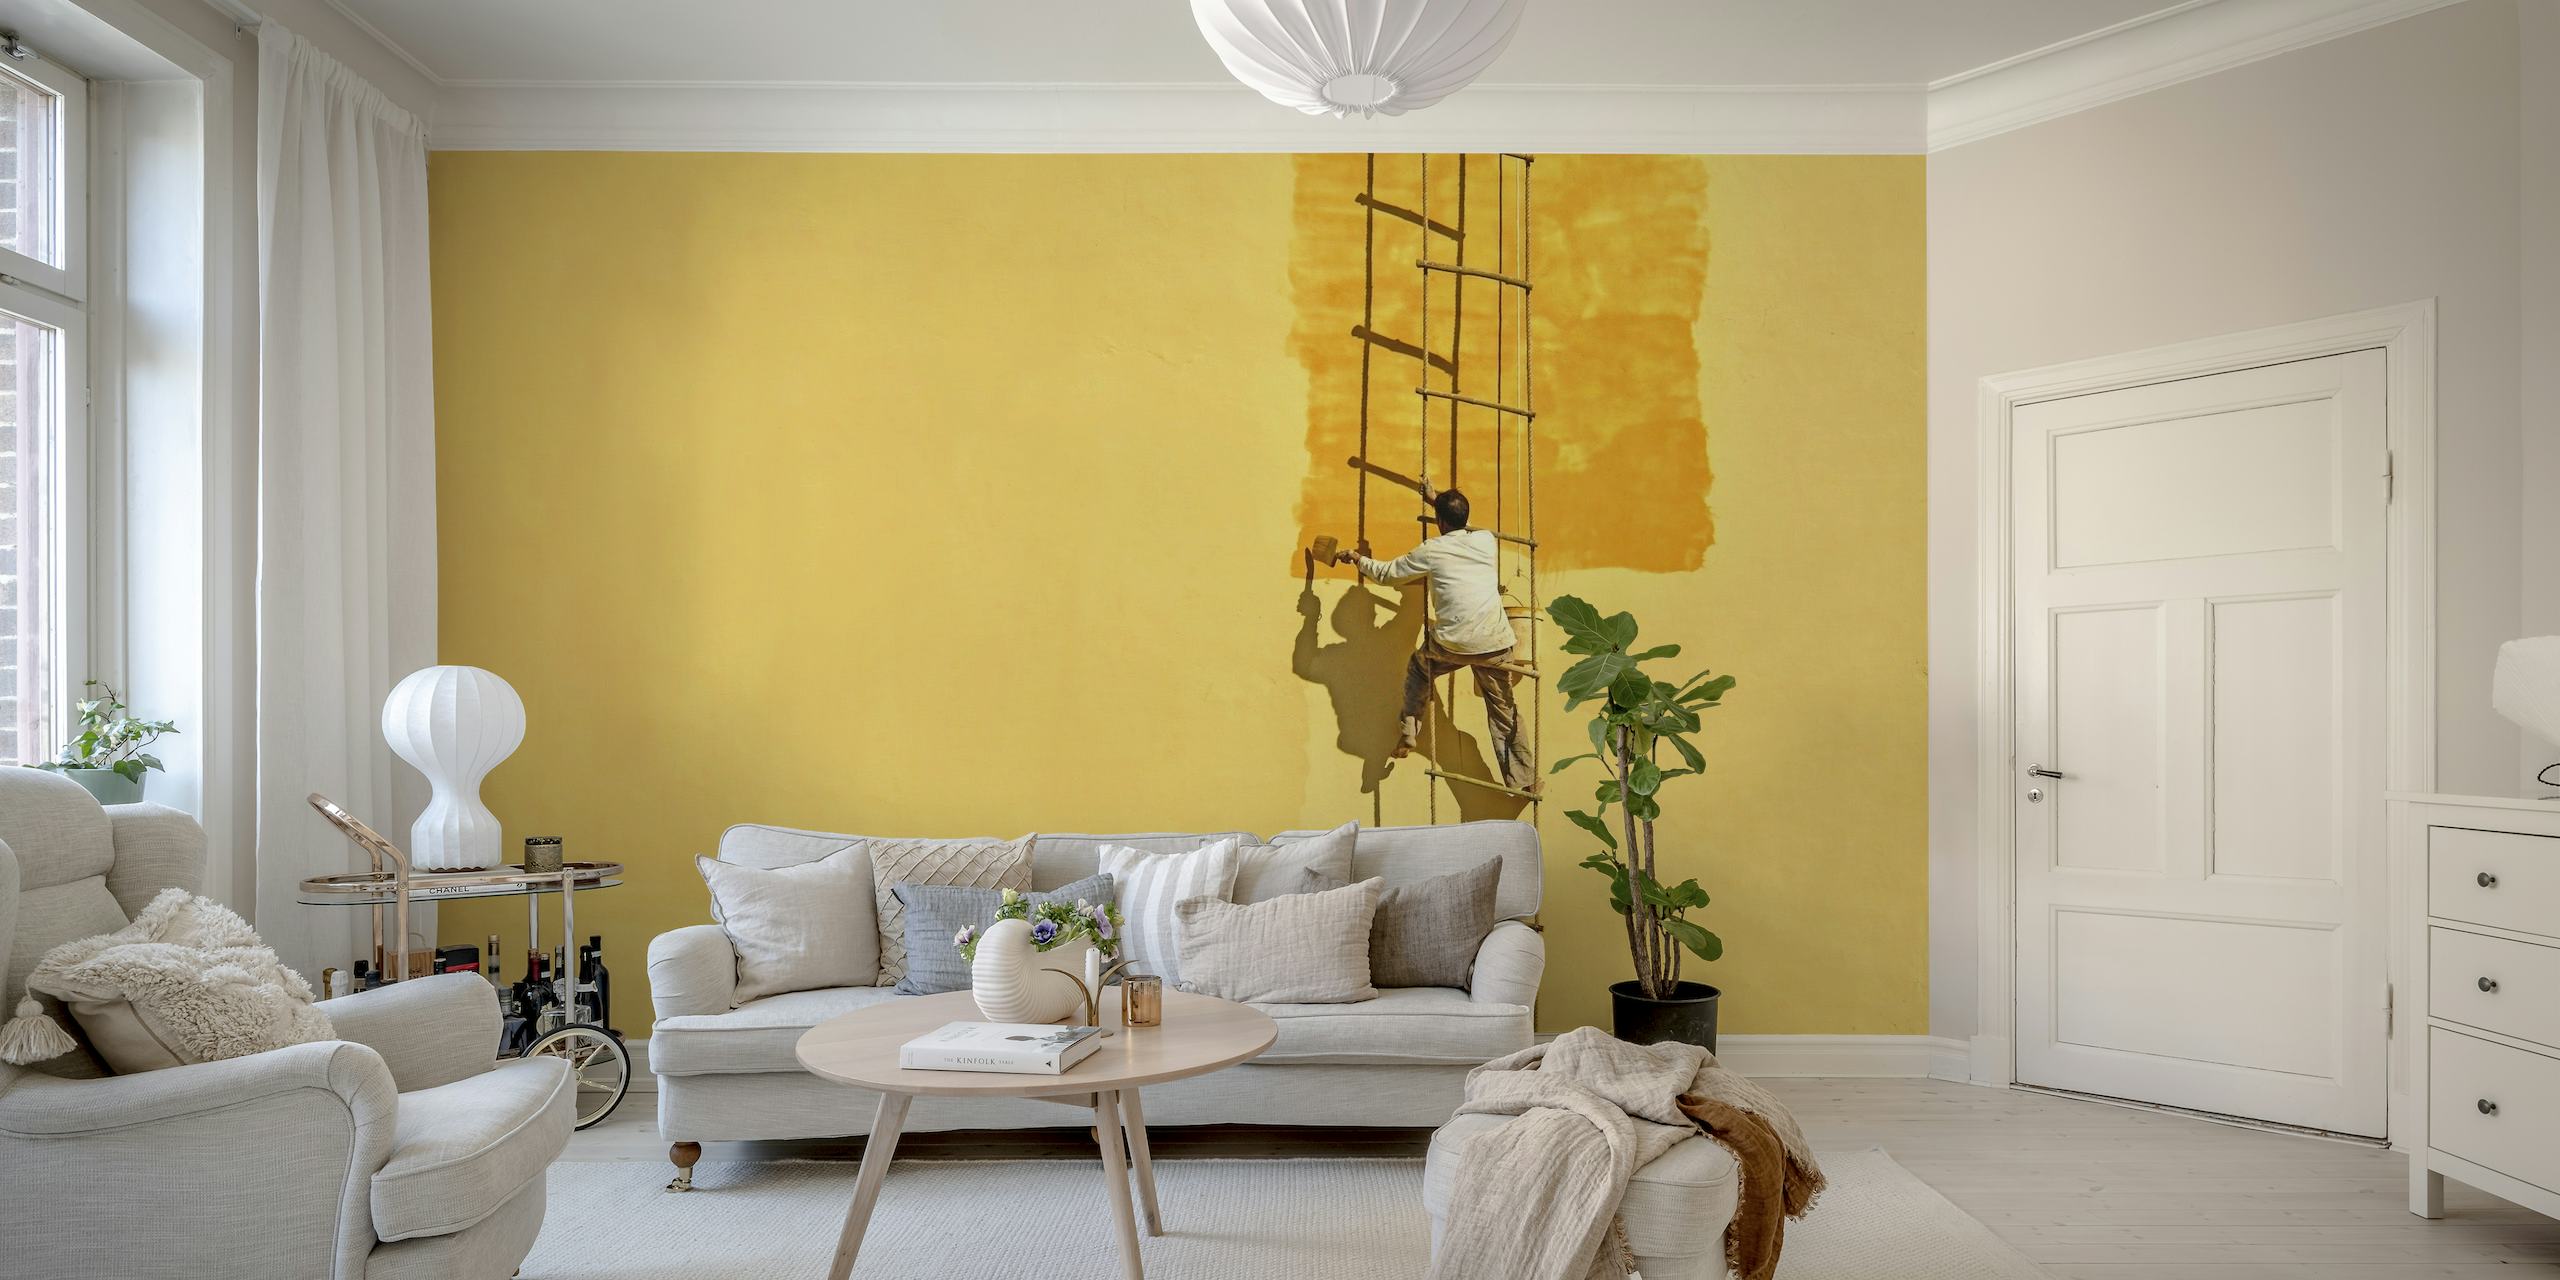 Peintre silhouetté sur une échelle contre papier peint jaune